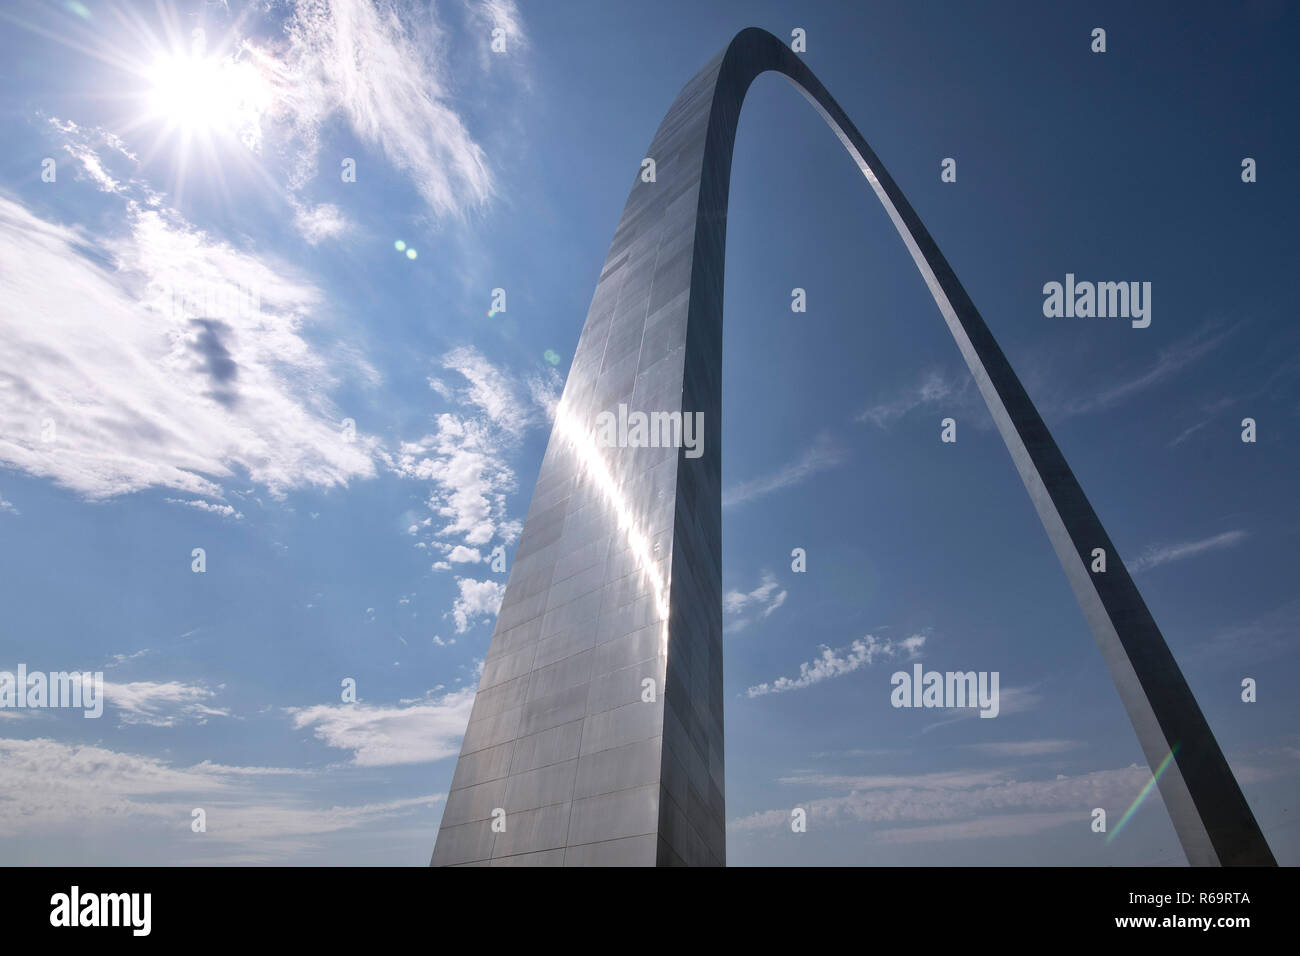 Landmark El Arco Gateway, Puerta de entrada hacia el oeste, en el centro de la ciudad, Saint Louis, Missouri, EE.UU. Foto de stock